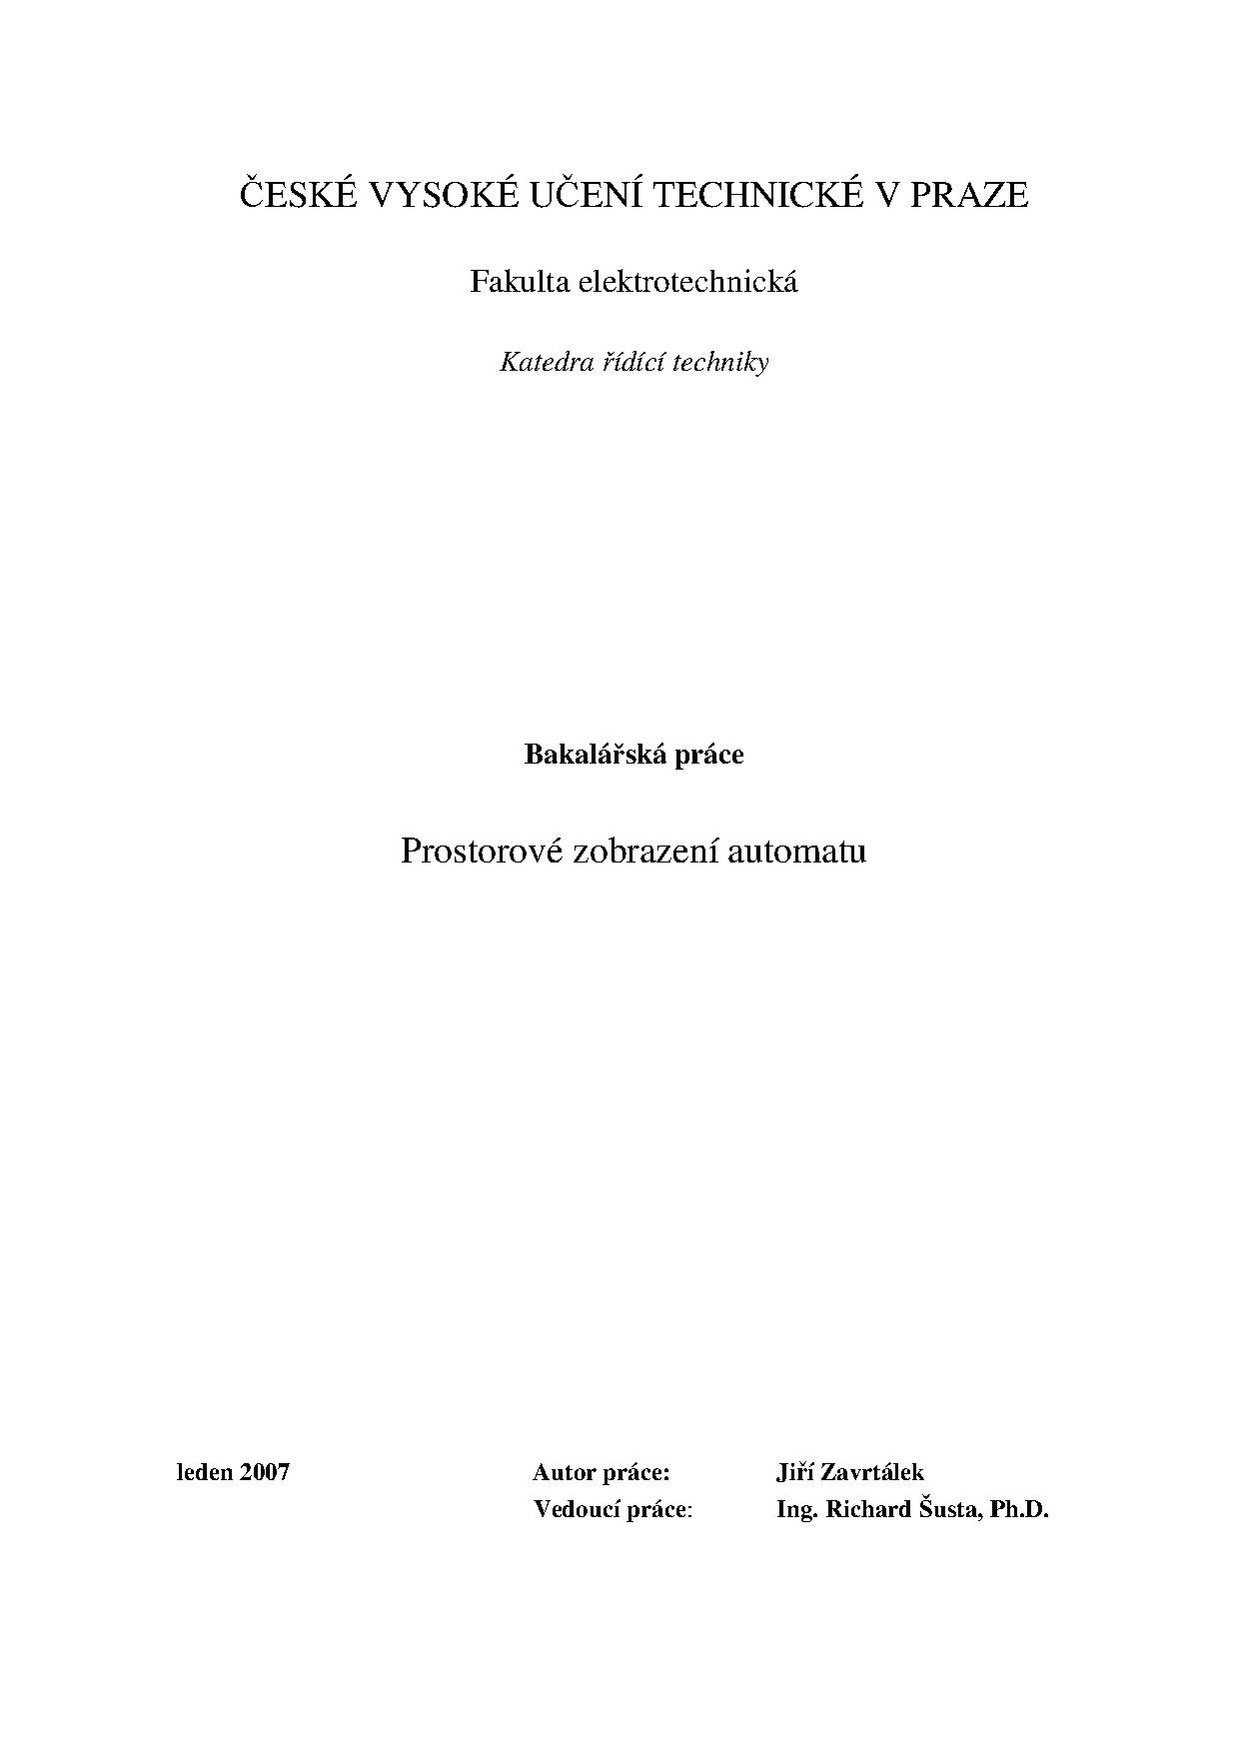 Bp 2007 zavrtalek jiri.pdf